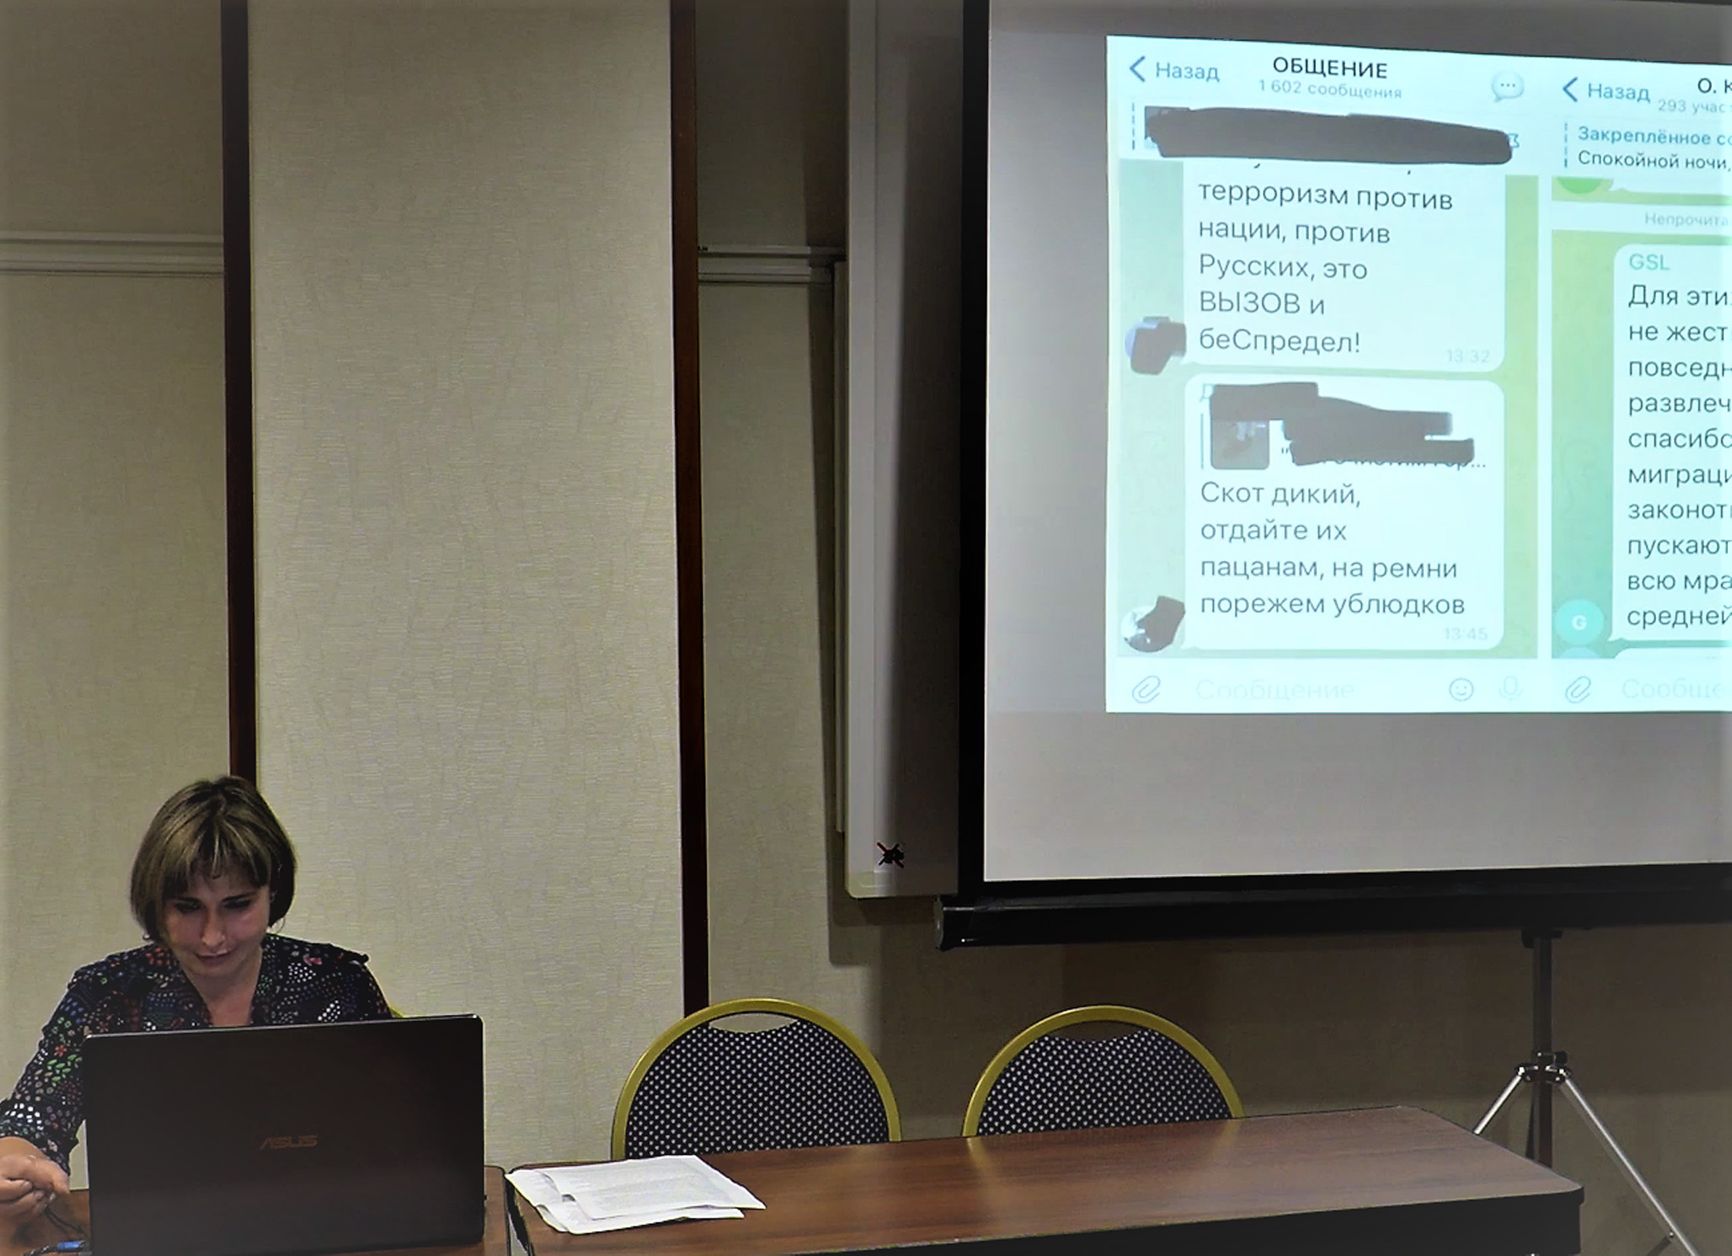 Юрист Лариса Маргорина на лекции для националистов из «Русской общины», слева на экране пример радикального высказывания из чата «Общины»